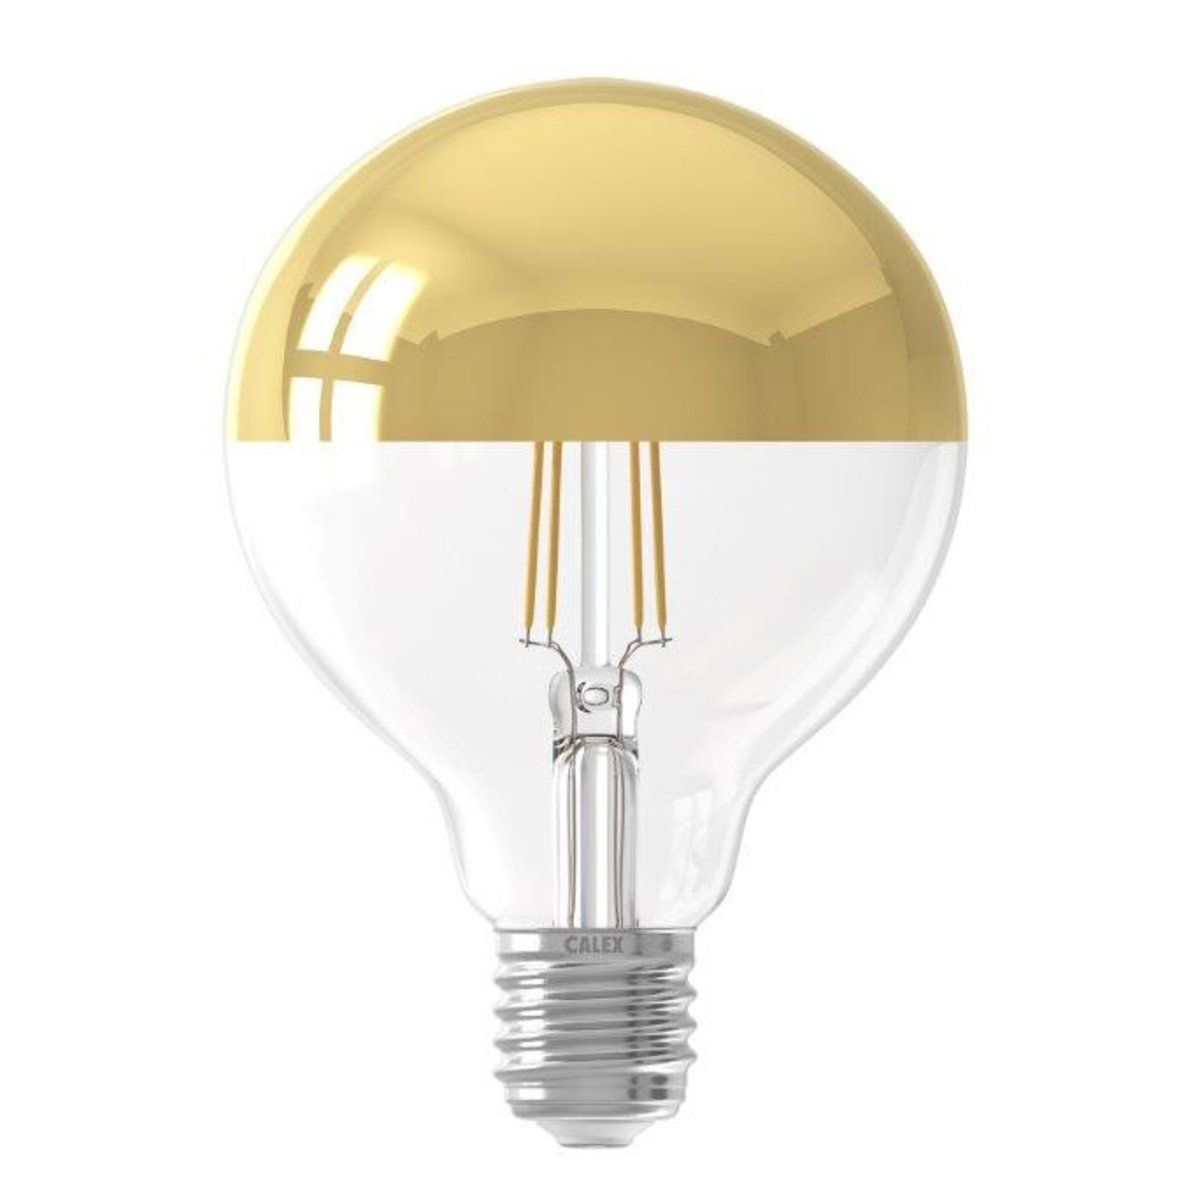 Ampoule déco filament LED dimmable E27 CALOTTE 280 lumens en verre doré Ø9.5cm